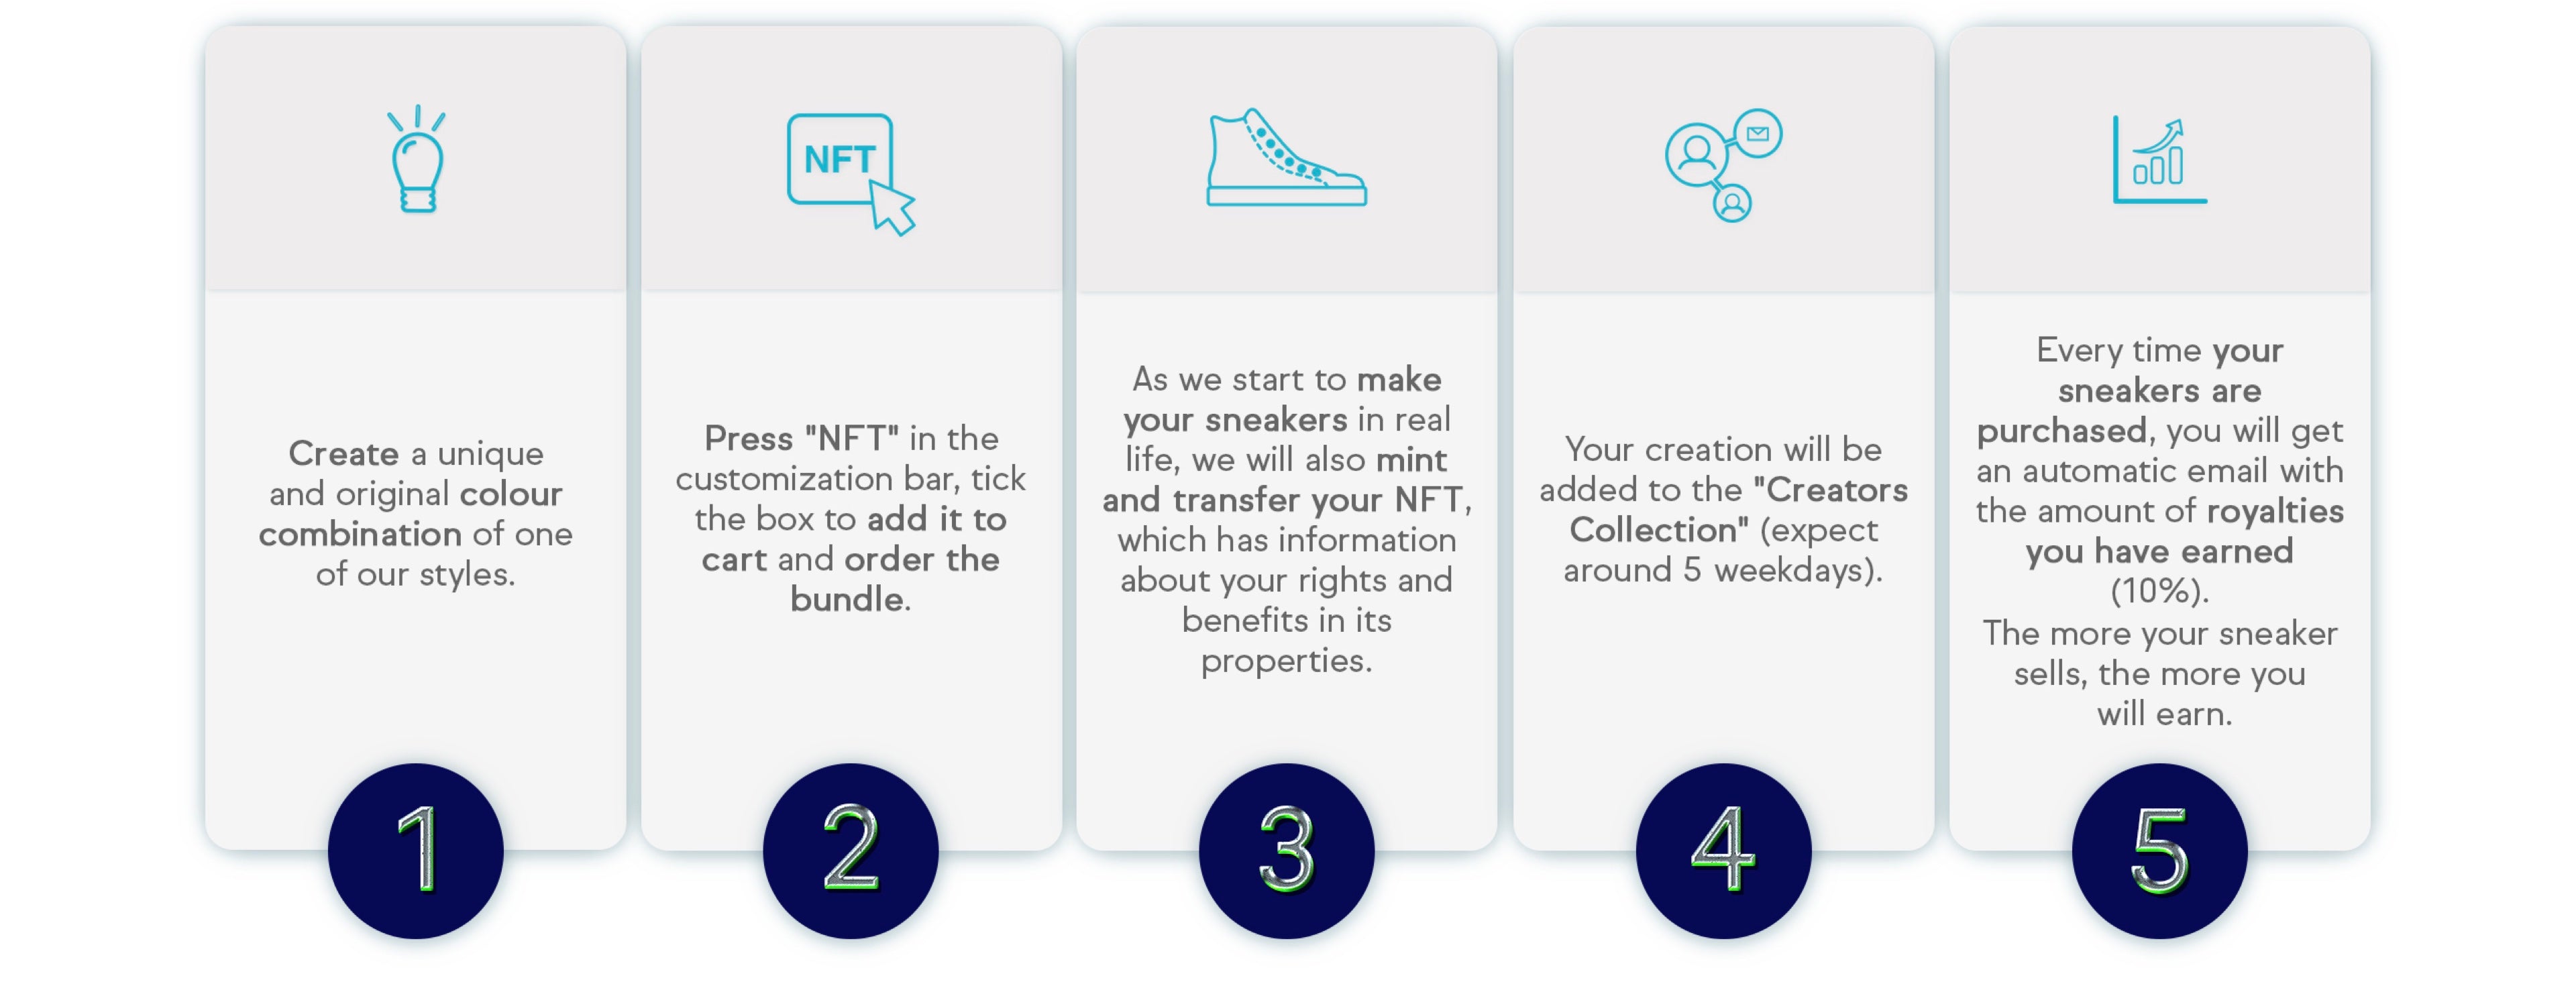 Informations sur la création de chaussures personnalisées NFT.